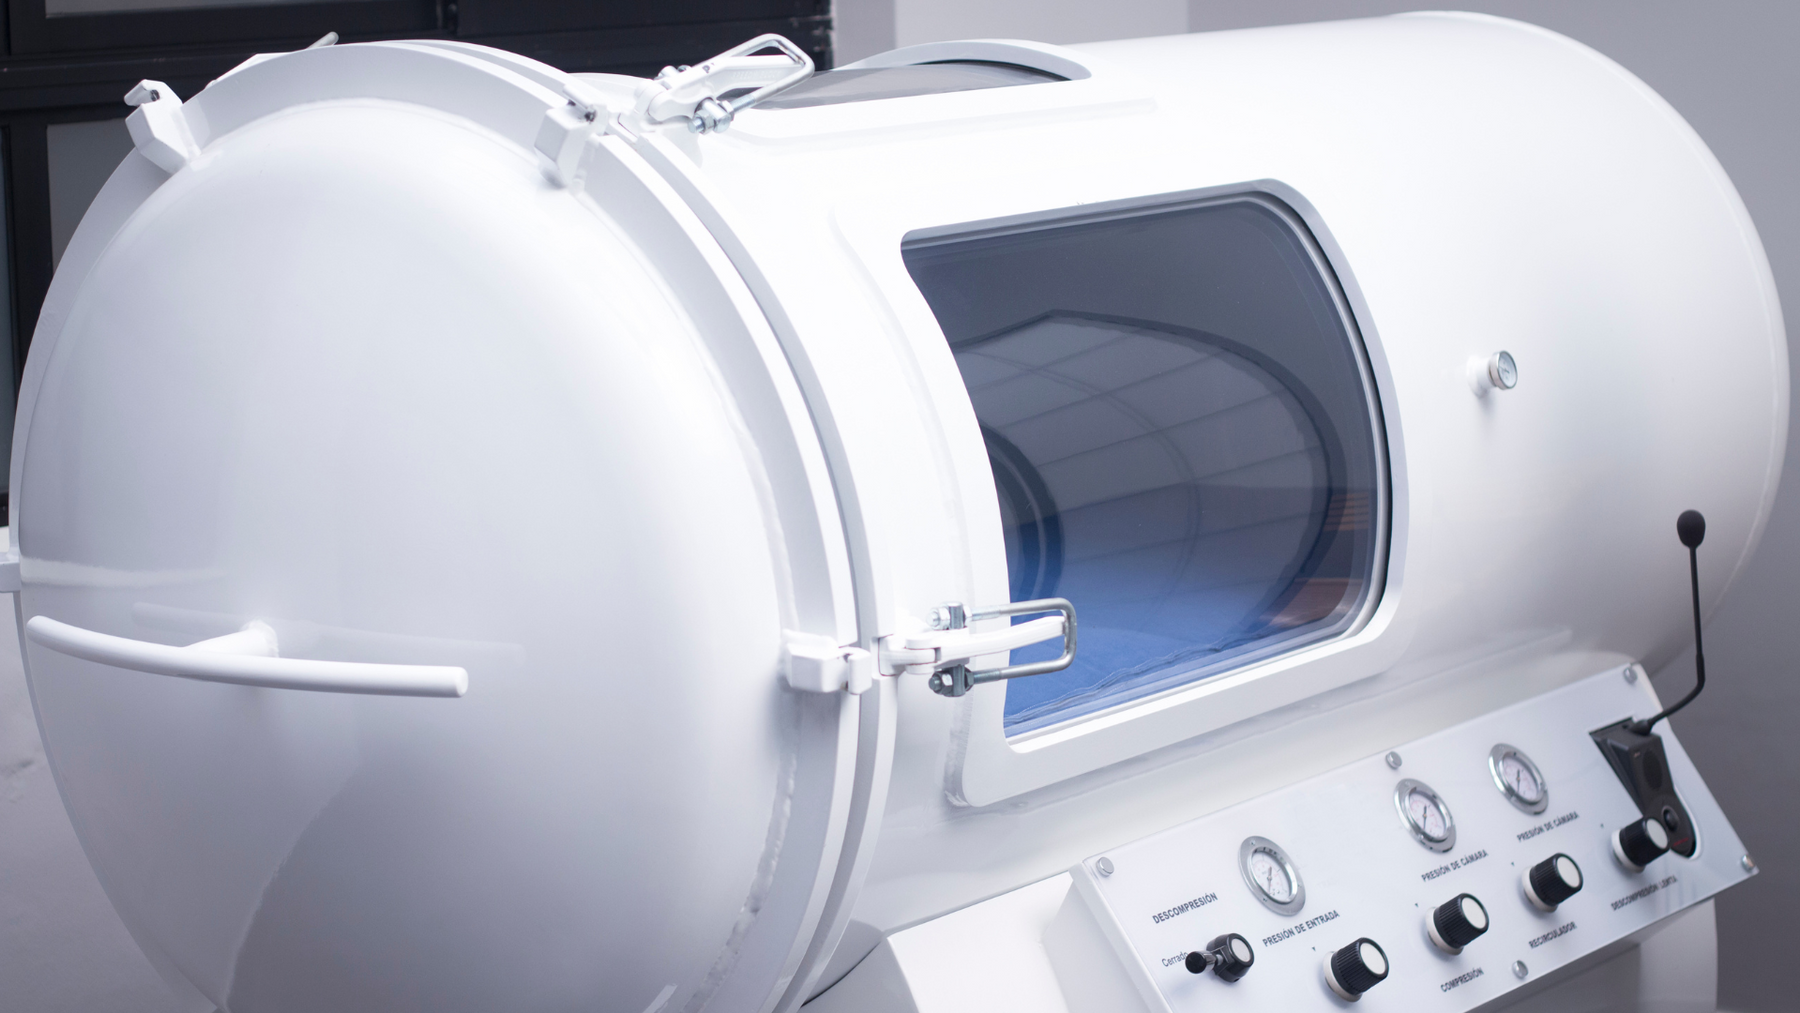 1.3 ATA Hyperbaric Chambers Benefits